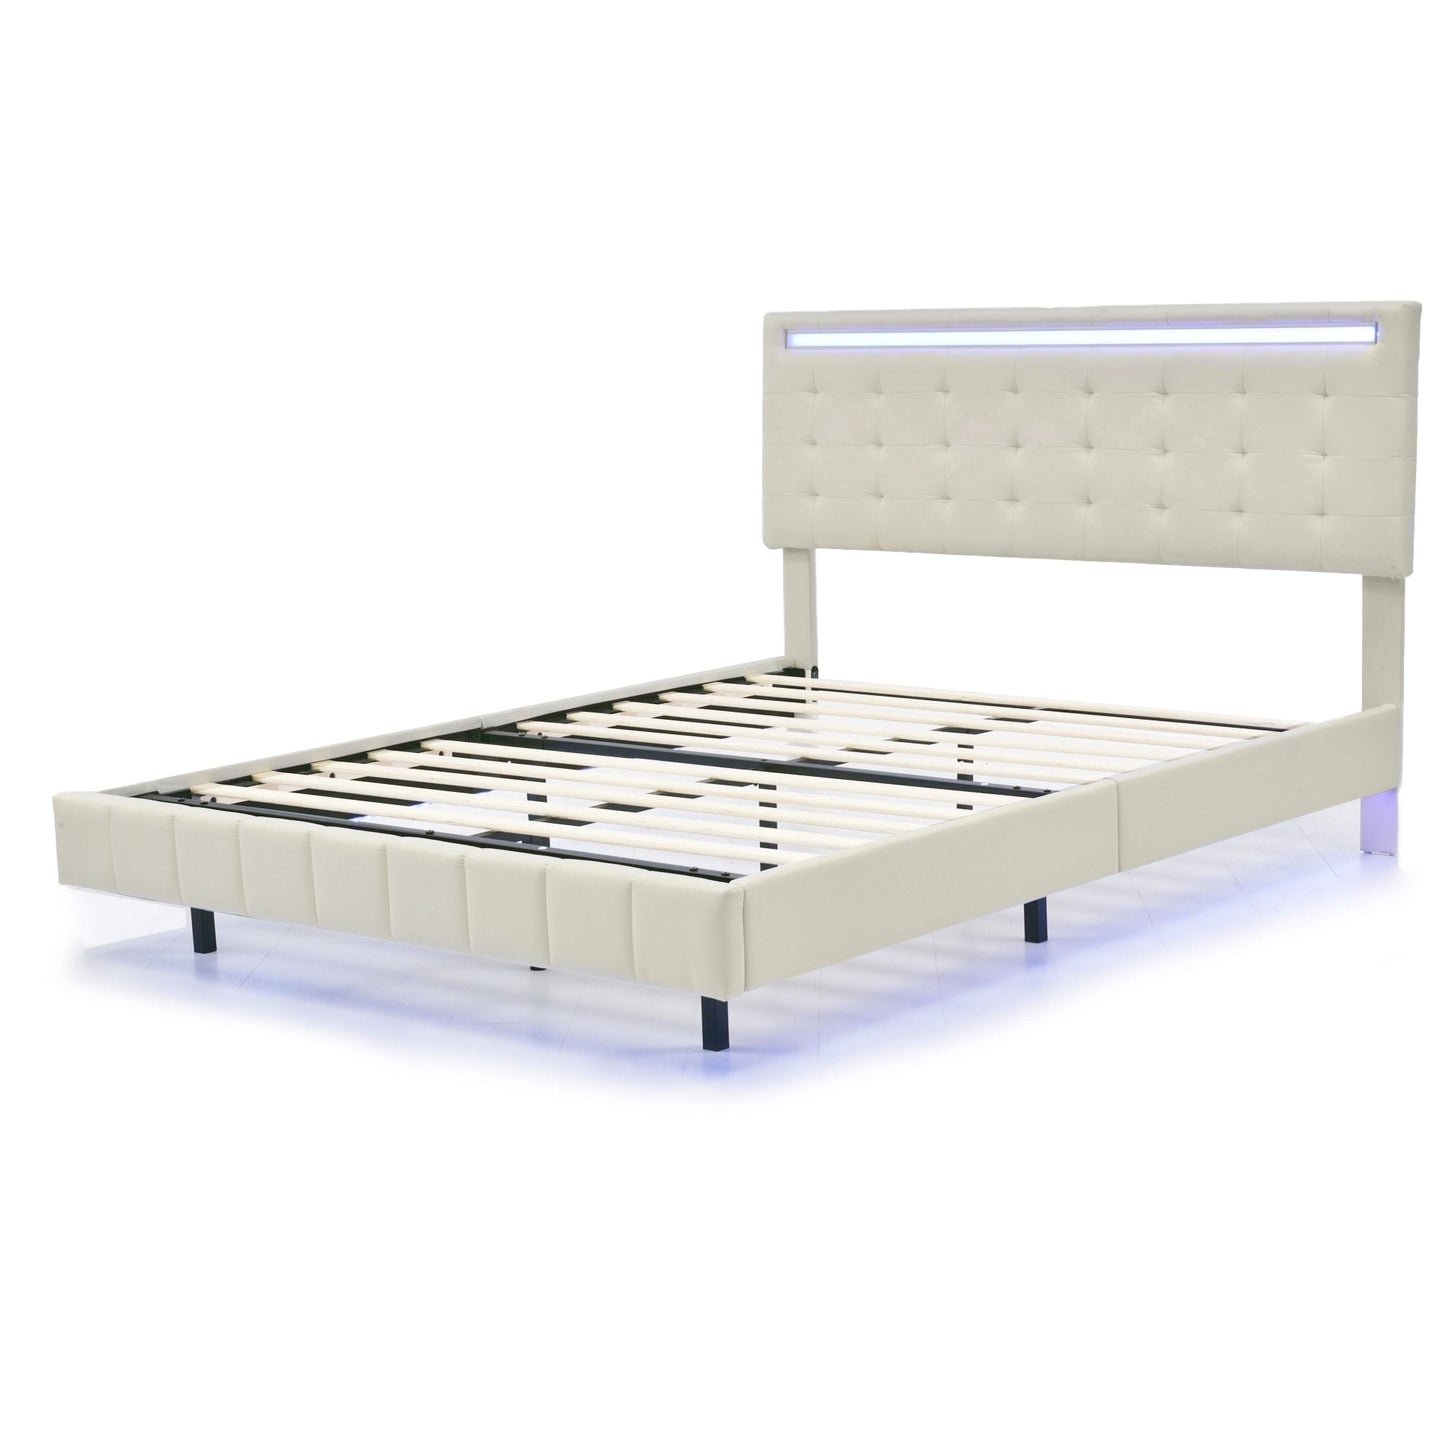 Queen Size Floating Bed Frame with LED Lights and USB Charging,Modern Upholstered Platform LED Bed Frame,Beige